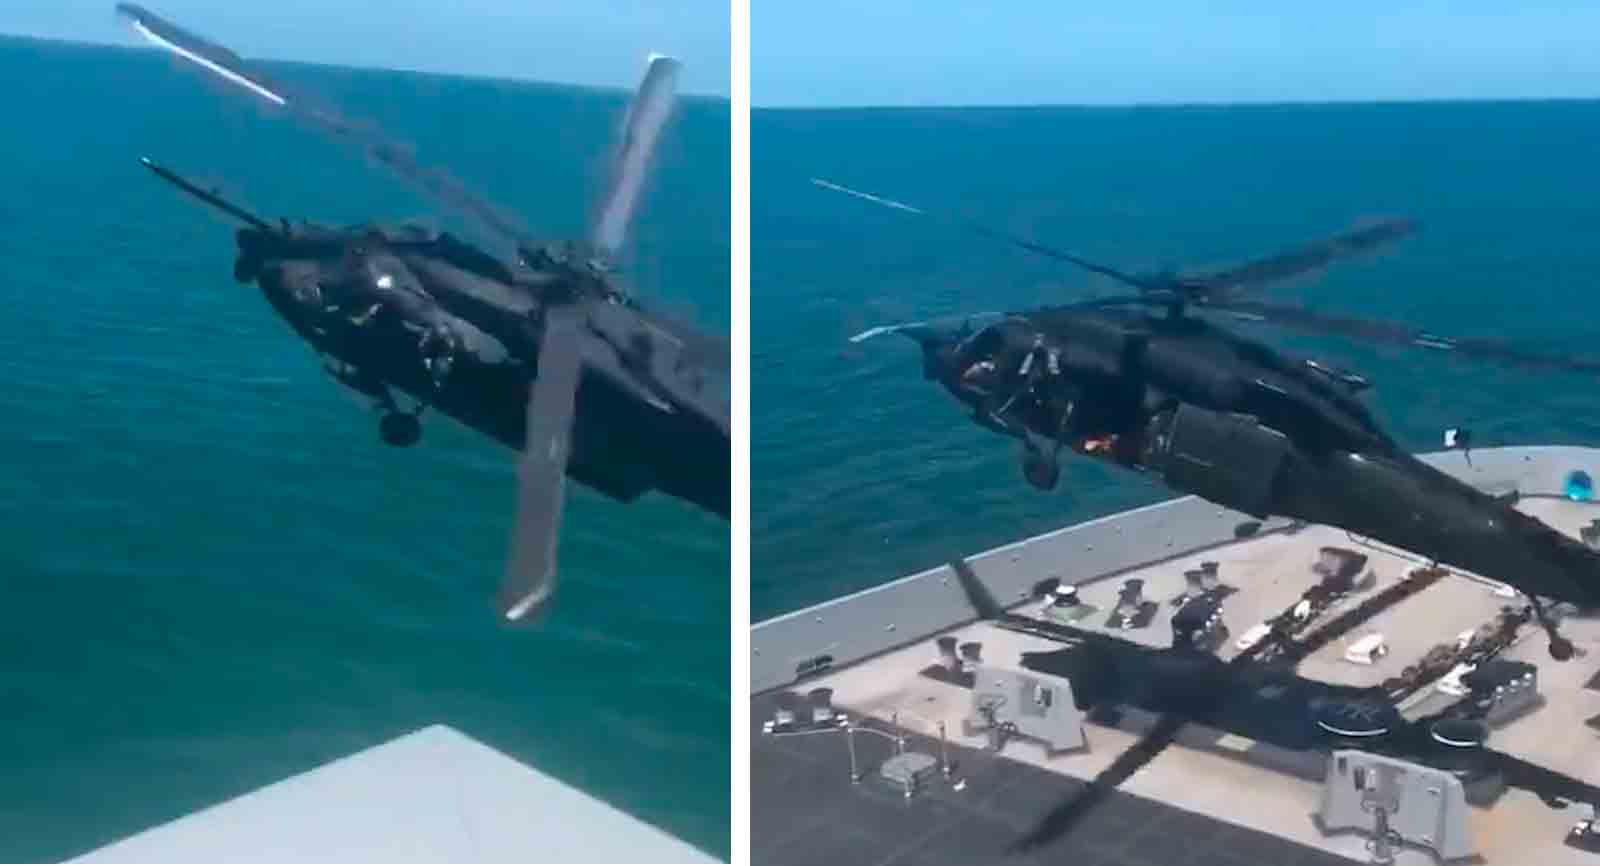 Vídeo incrível mostra a interceptação e invasão de navio em movimento por helicóptero do Exército dos EUA. Foto e vídeo: Reprodução twitter @stallhornlulul